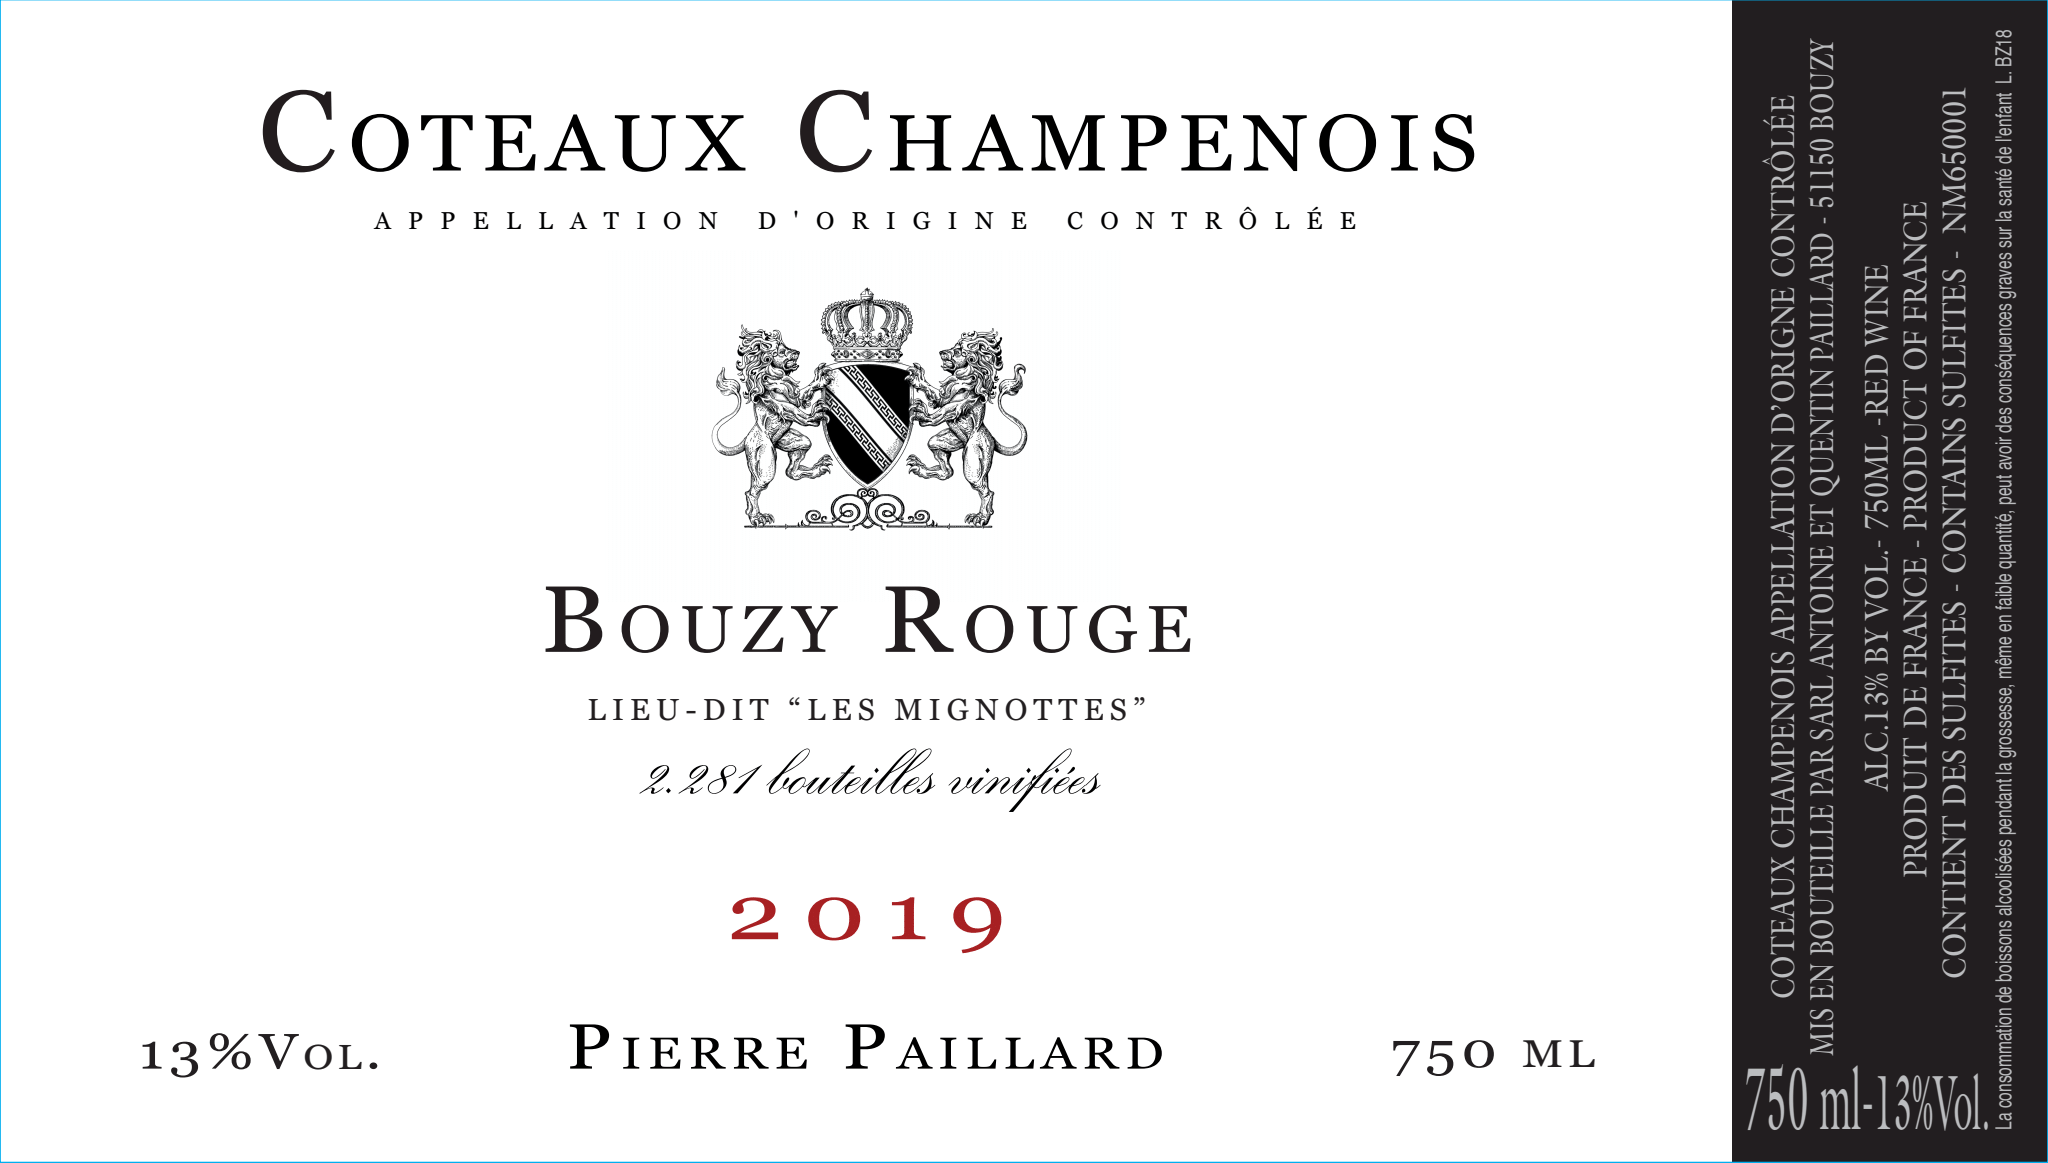 Pierre Paillard, Coteaux Champenois Les Mignottes Bouzy, 46% OFF